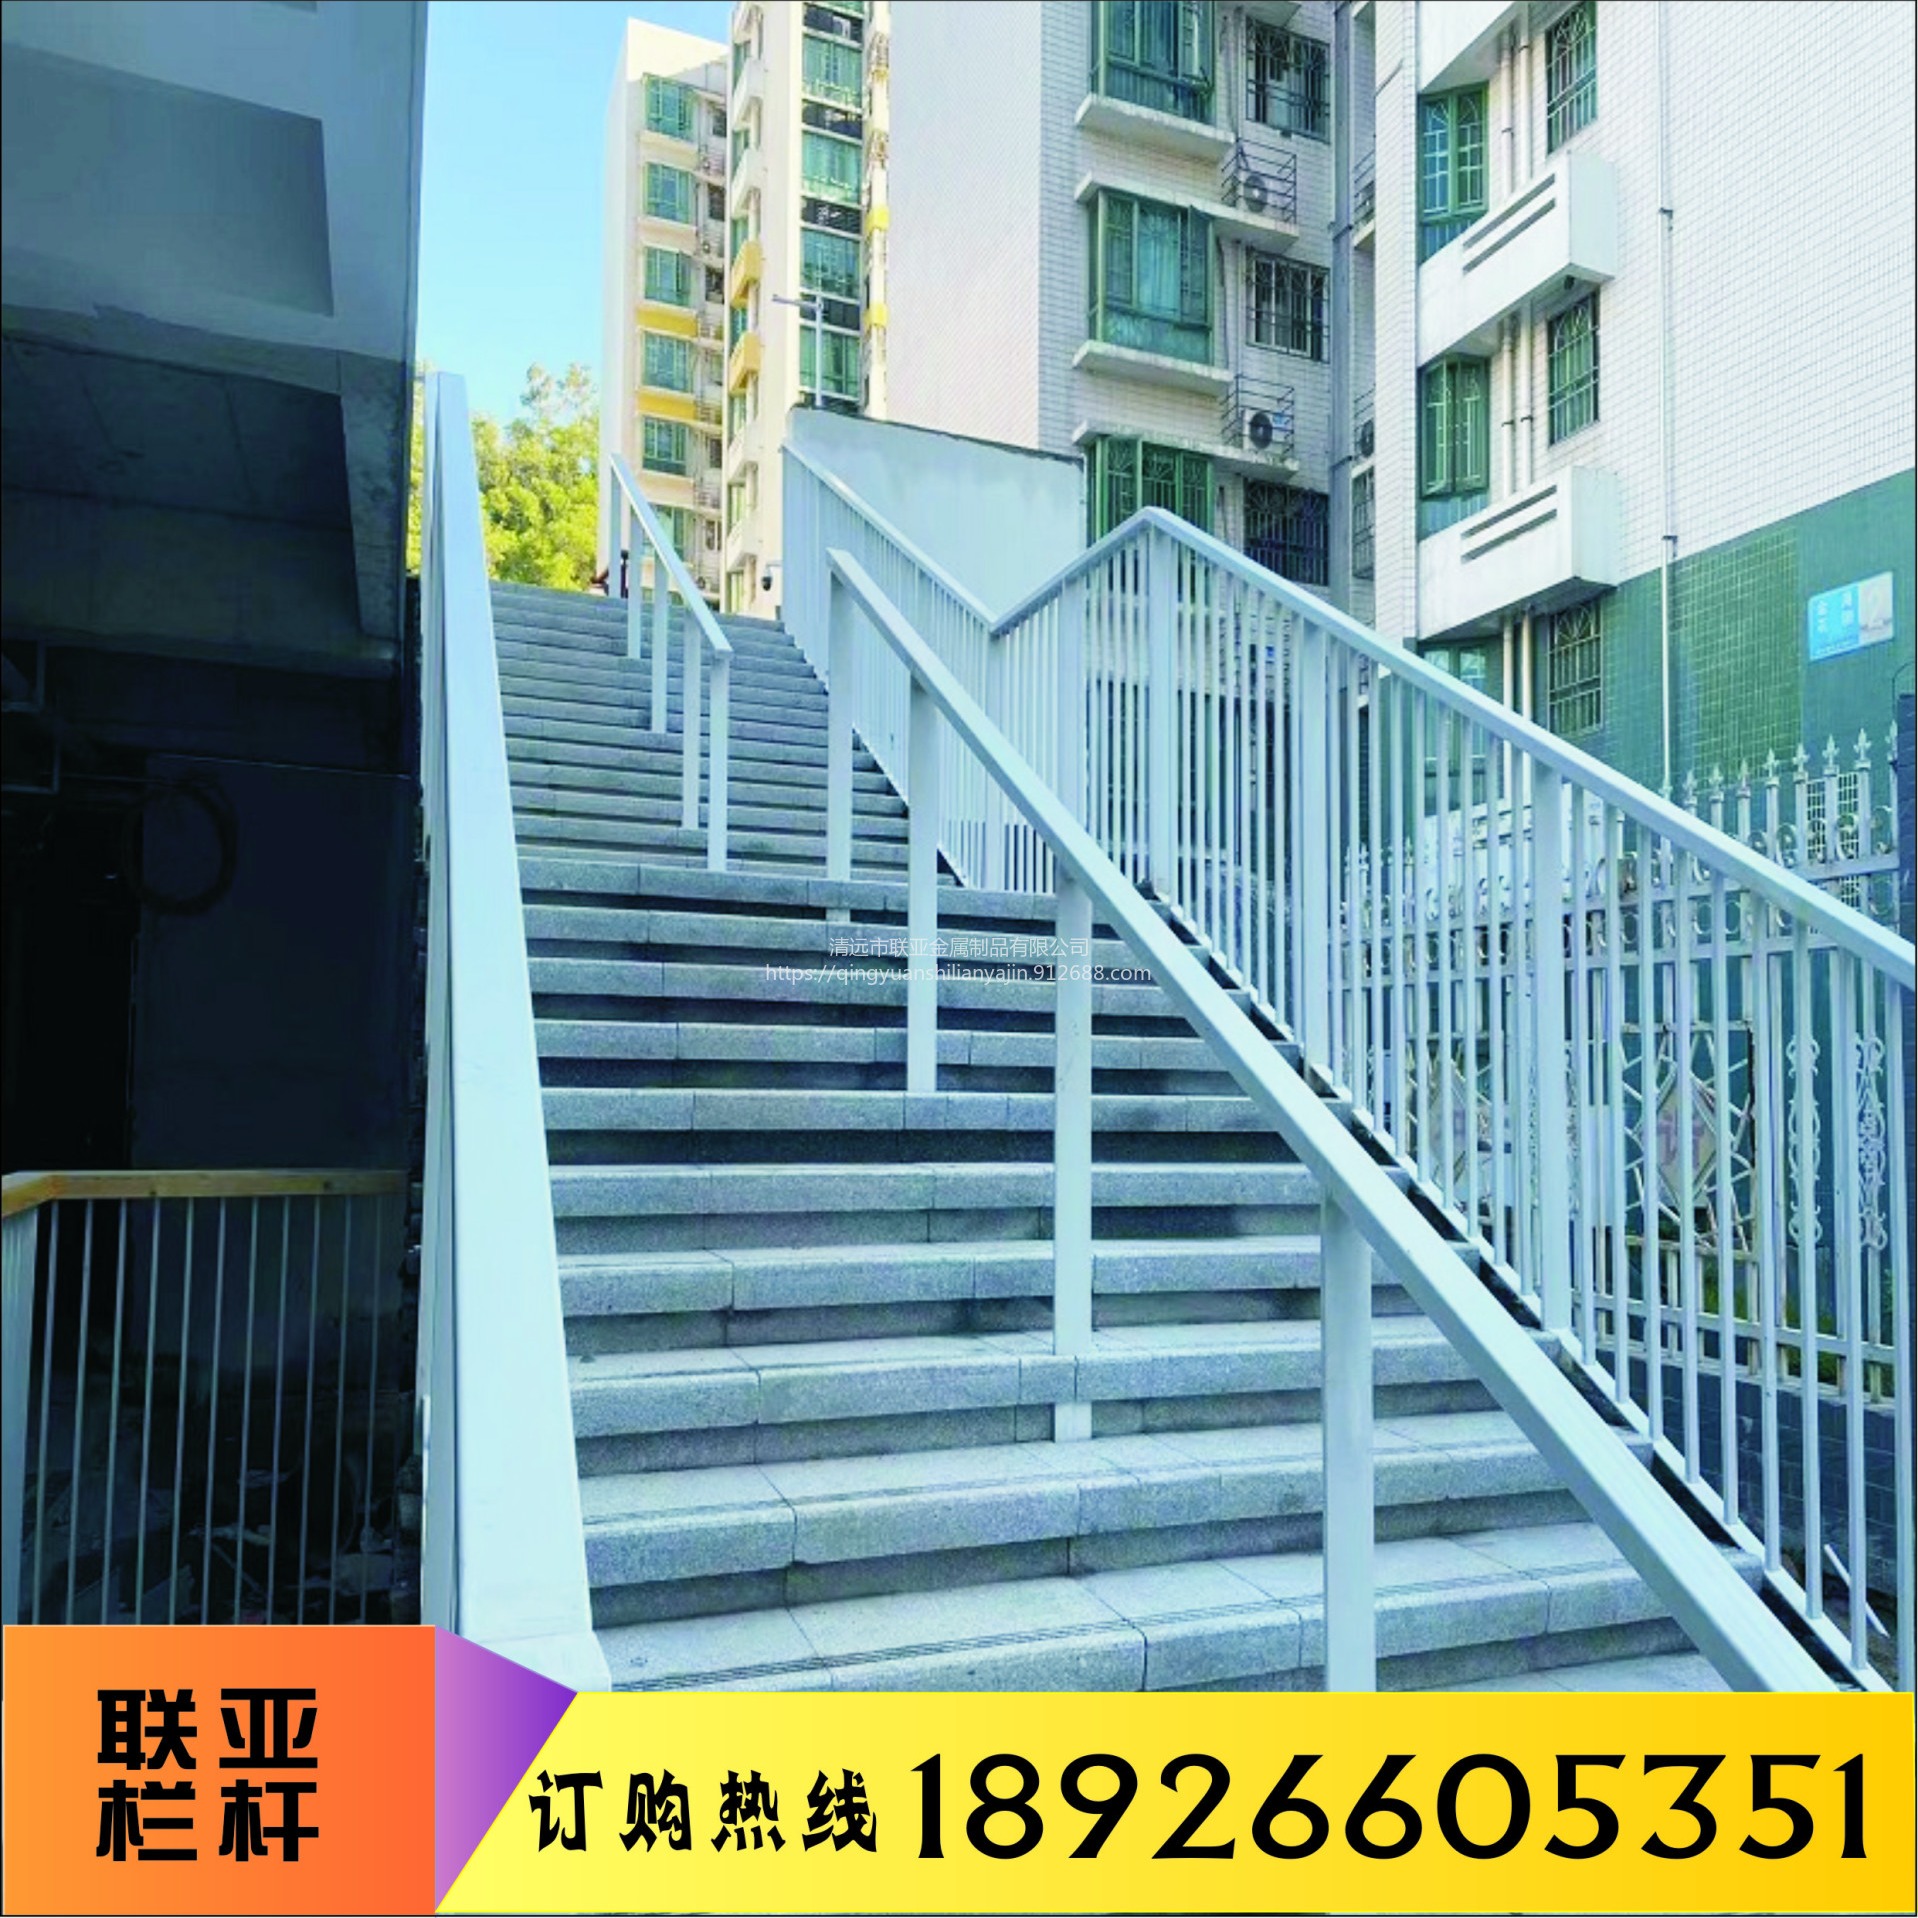 铁艺锌钢栏杆 楼梯护栏 适用于学校 工厂 别墅 厂家定制